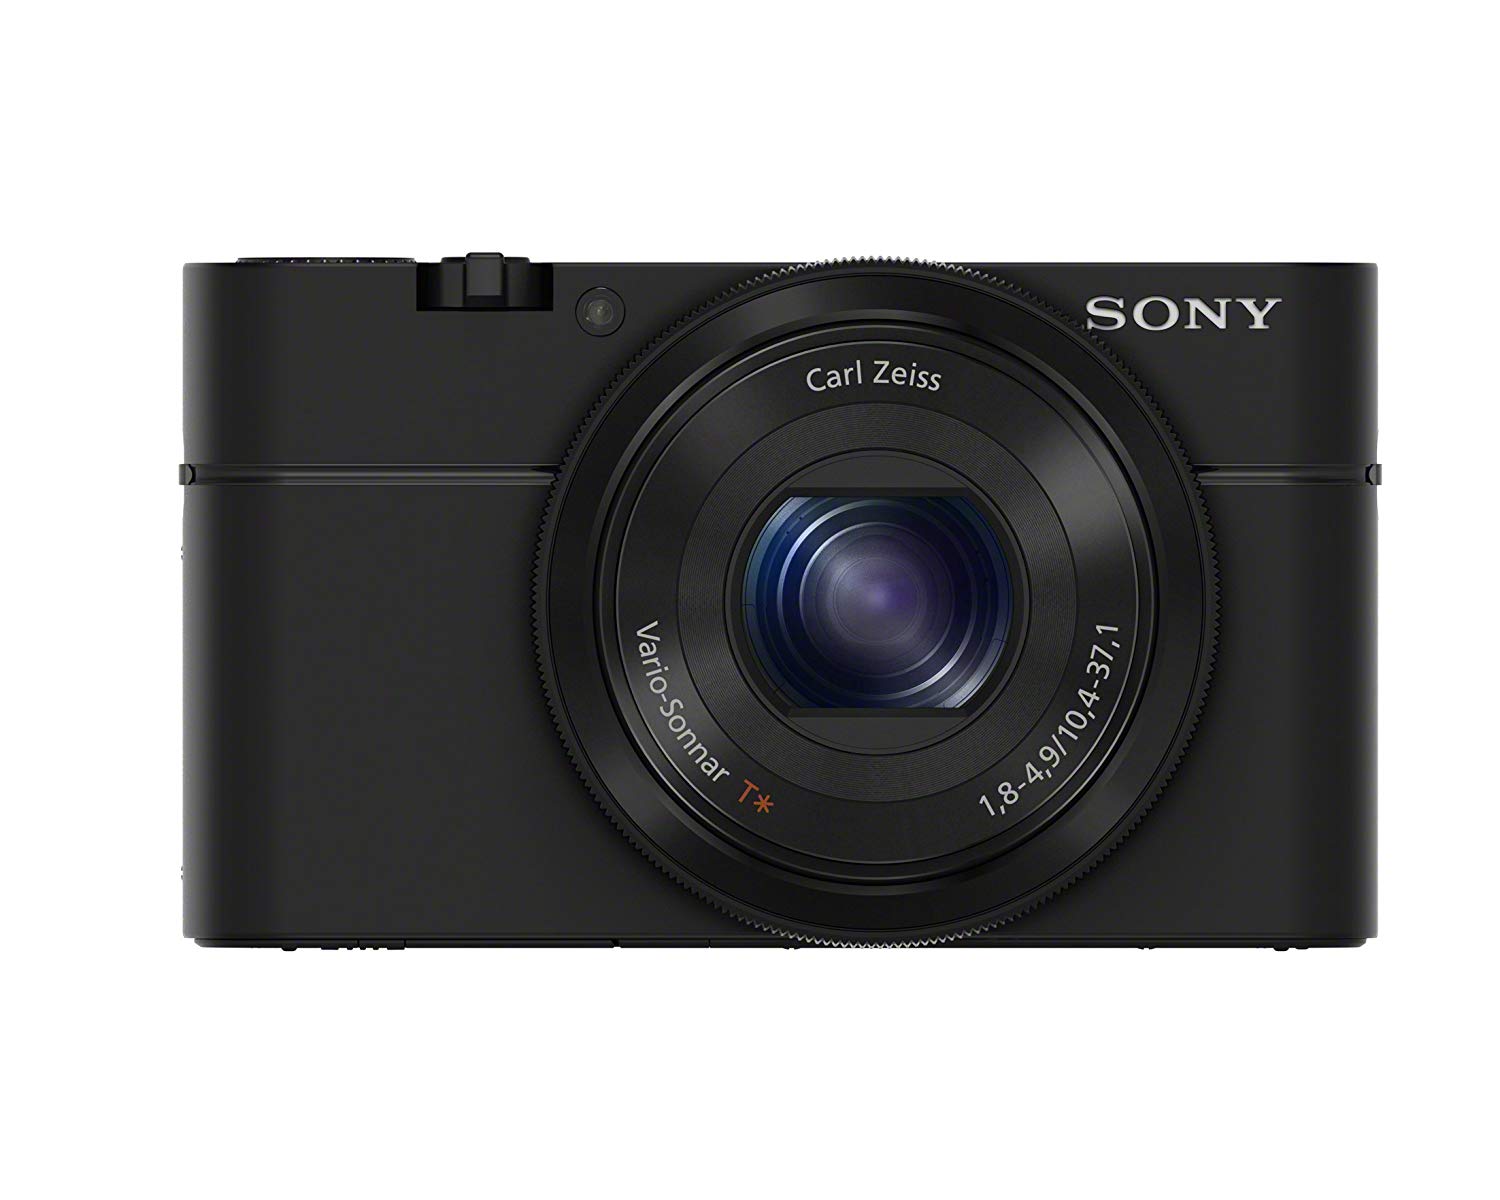 Appareil Photo pas cher – Le Sony Cyber-Shot RX100 à capteur 1" à 319 € chez Amazon